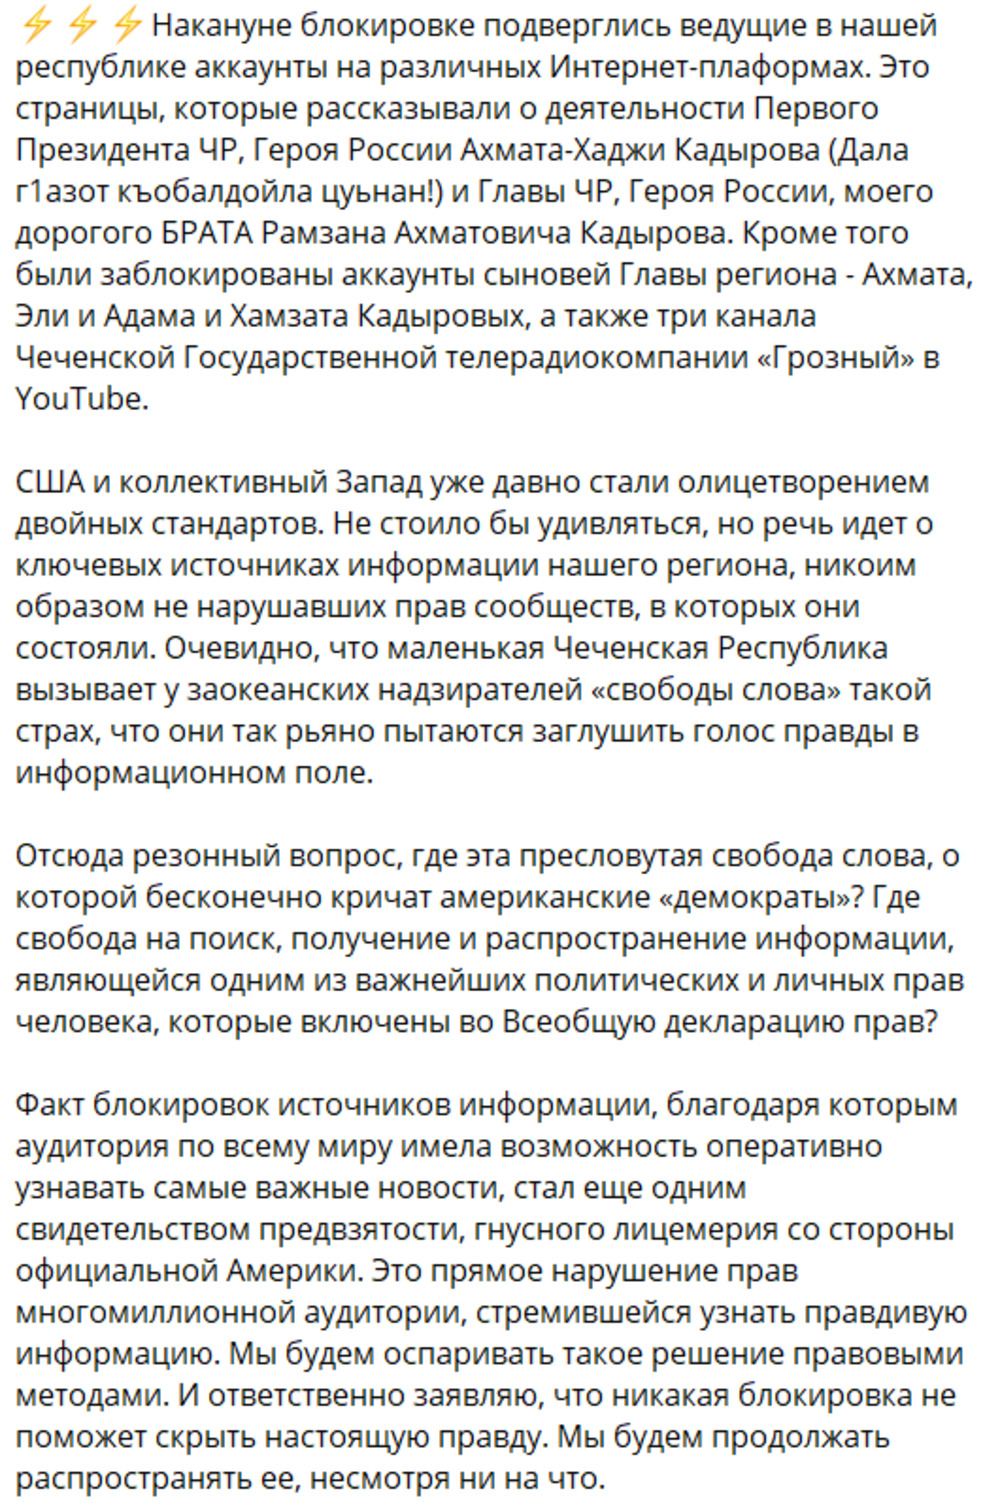 Рамзану Кадырову и его сыновьям заблокировали страницы в соцсетях